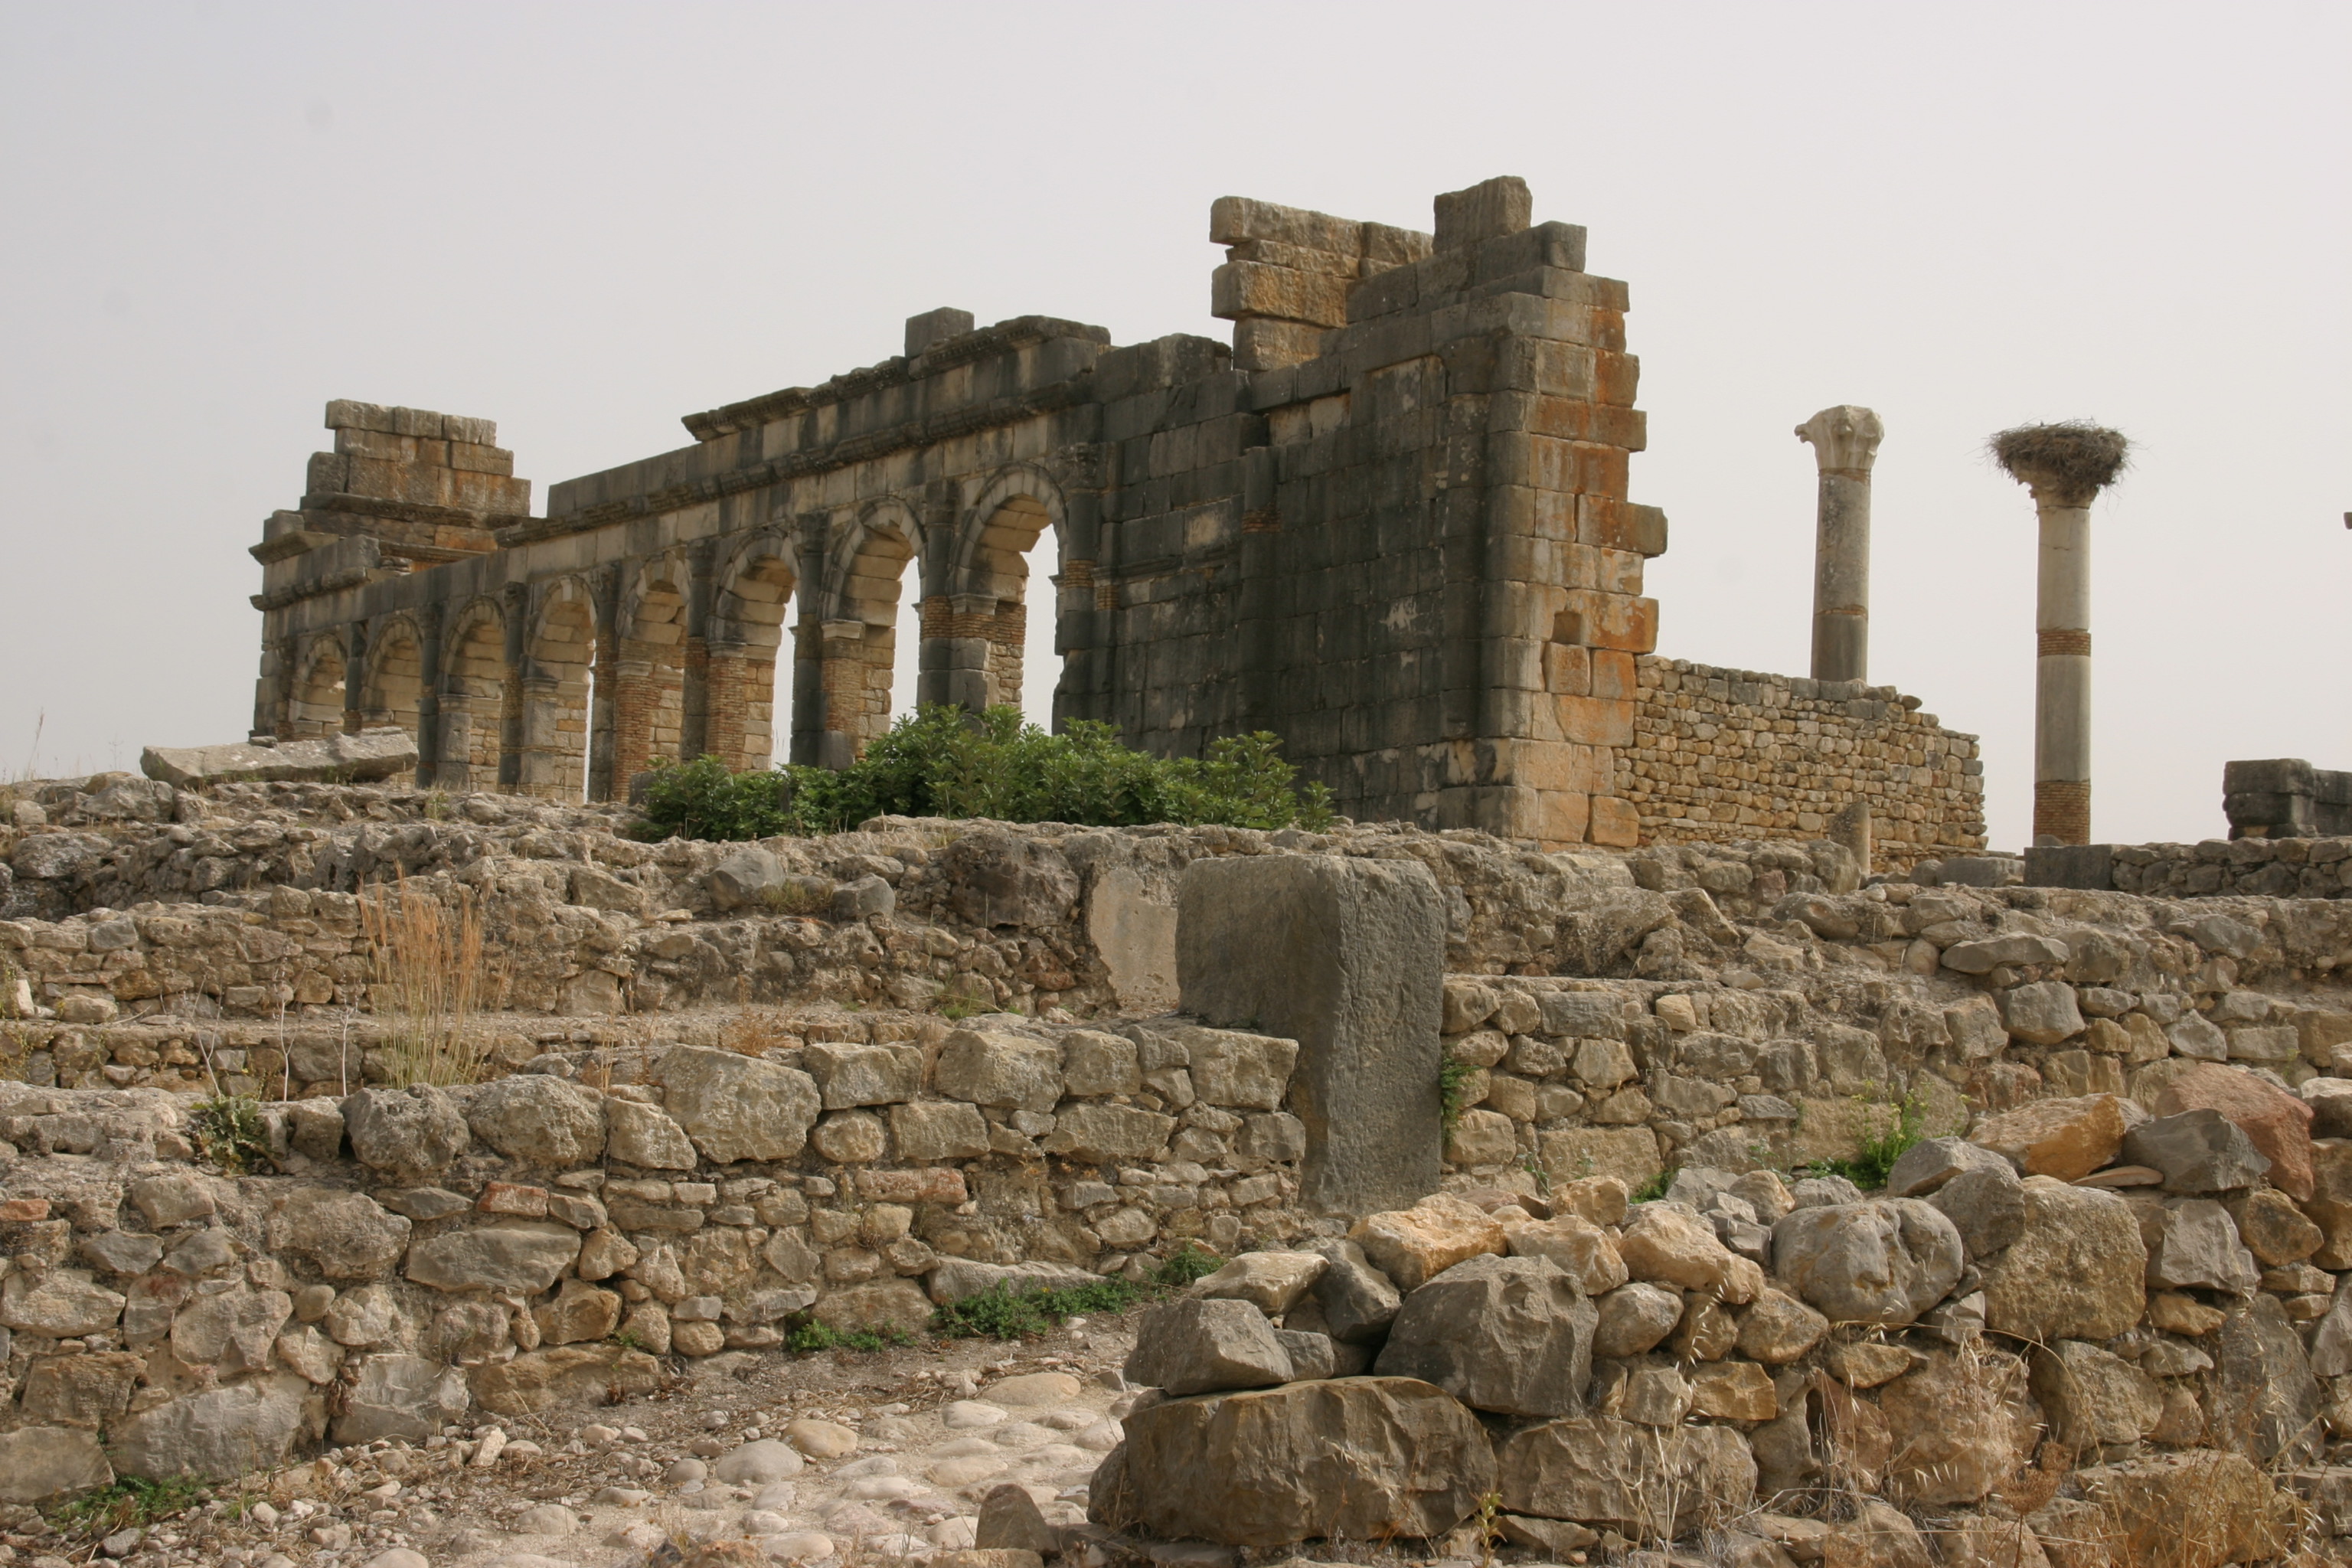 A római kori Volubilis az ország legjobban megmaradt romvárosa, a fekete afrikai területeket Európával összekötő karavánútvonal fontos állomásaként gazdagodott meg, majd a gazdagságát a karavánútvonal áthelyeződésével vesztette el, és nem sokkal utána el is néptelenedett